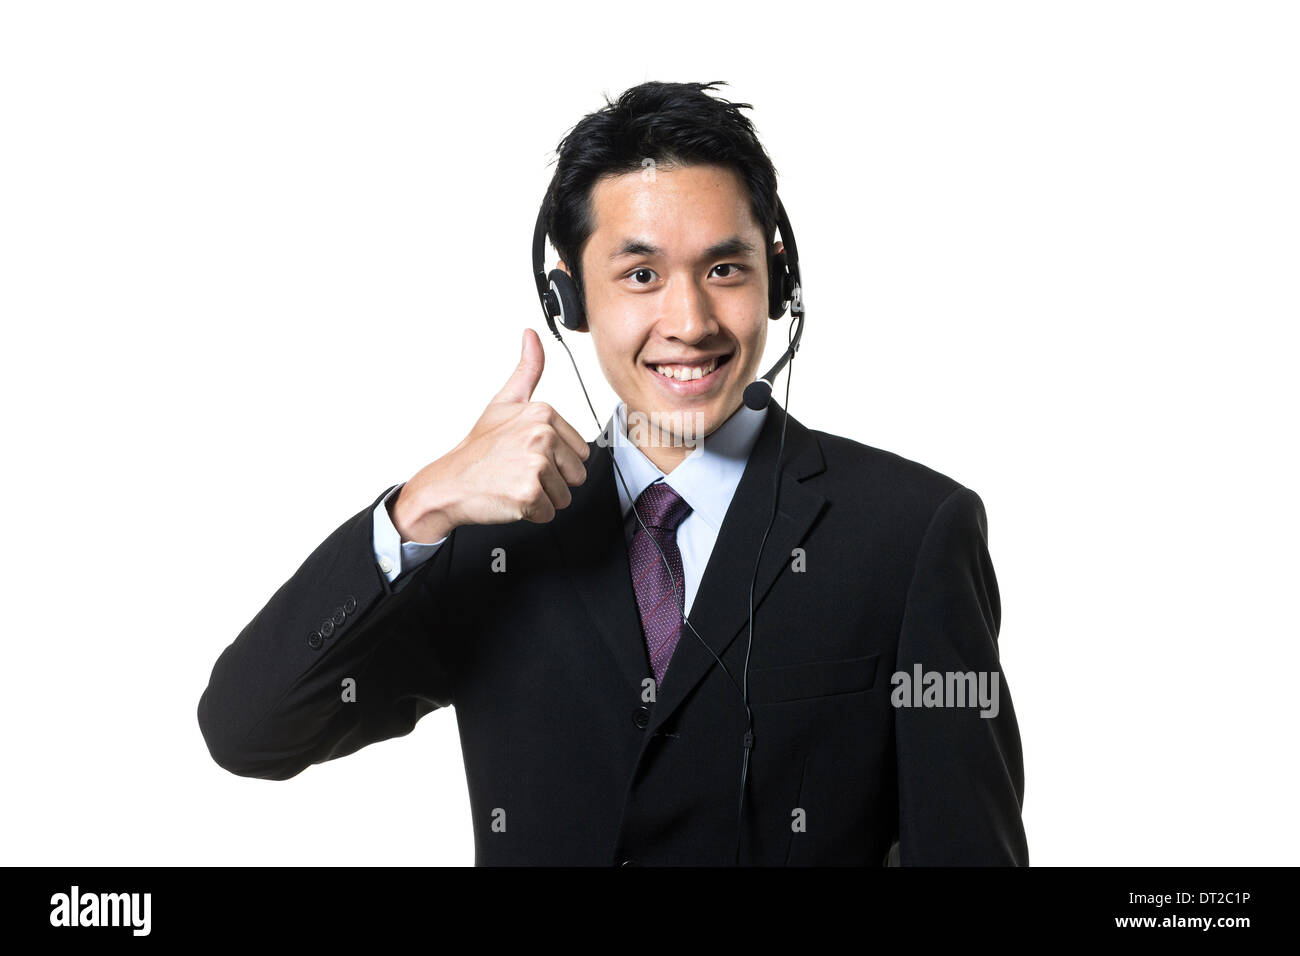 Chinesischer Geschäftsmann, Callcenter Agent einen Kopfhörer tragen. Isoliert auf weißem Hintergrund. Stockfoto